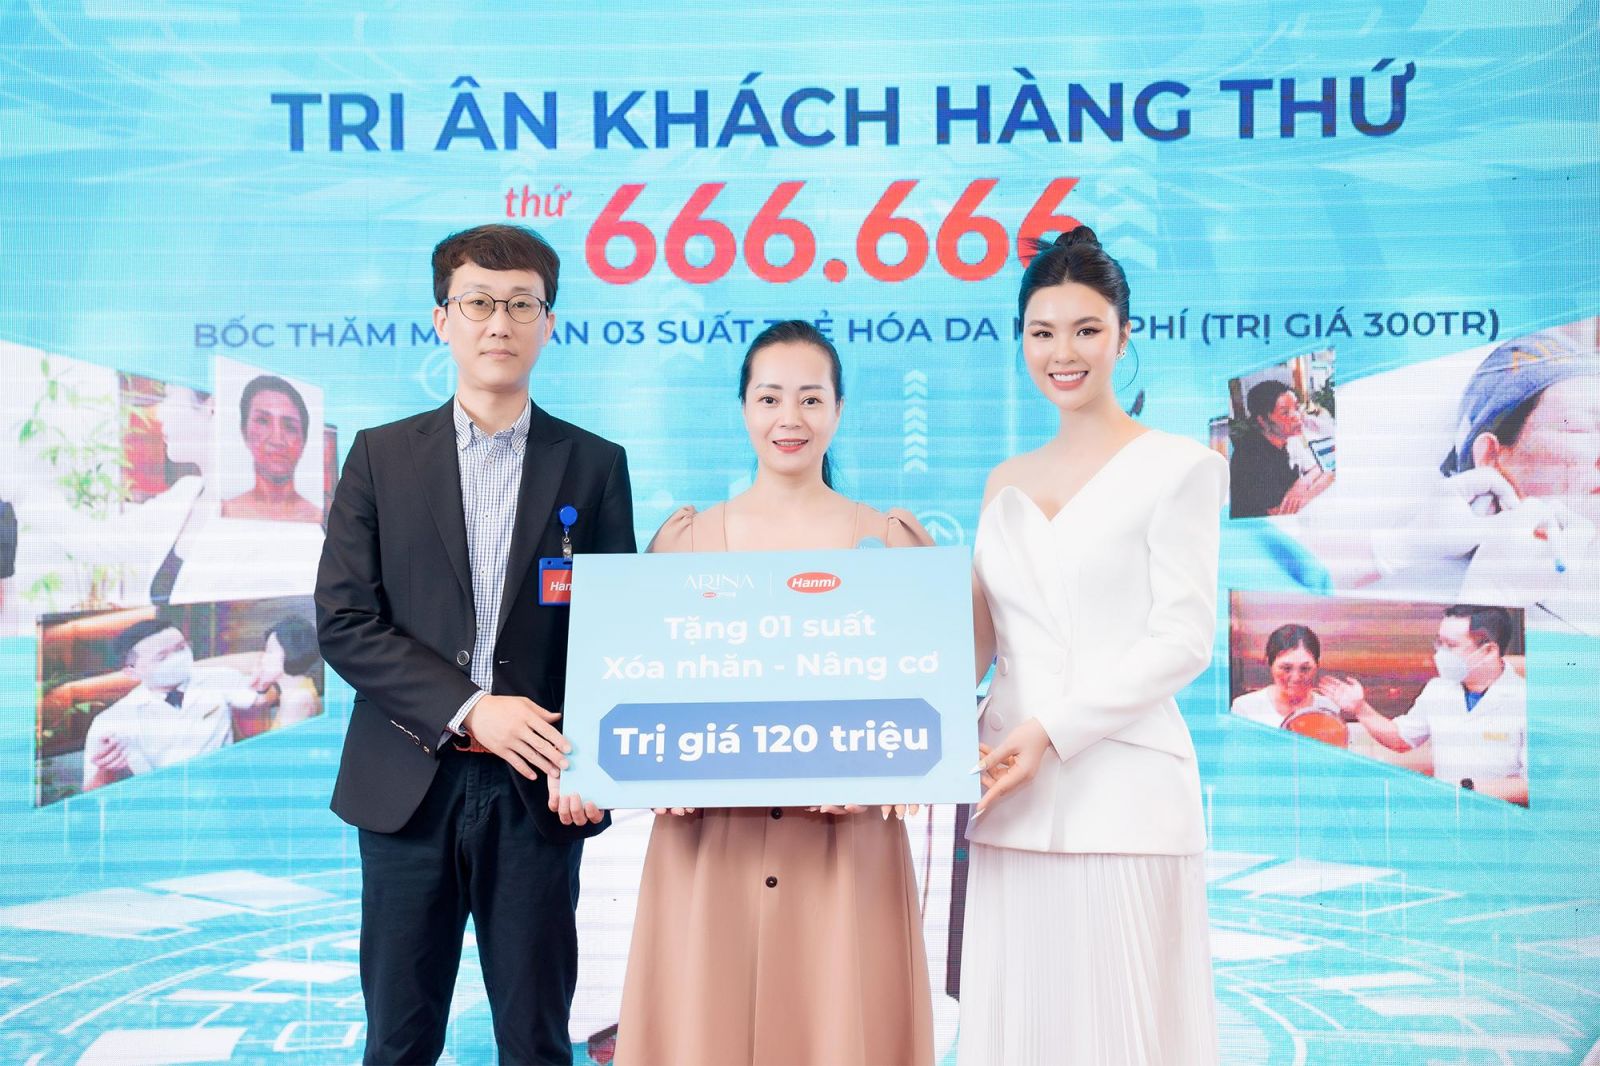 1 suất Xóa nhăn - nâng cơ trị giá 120.000.000đ được trao tặng cho chị Đỗ Thị Thu Hà